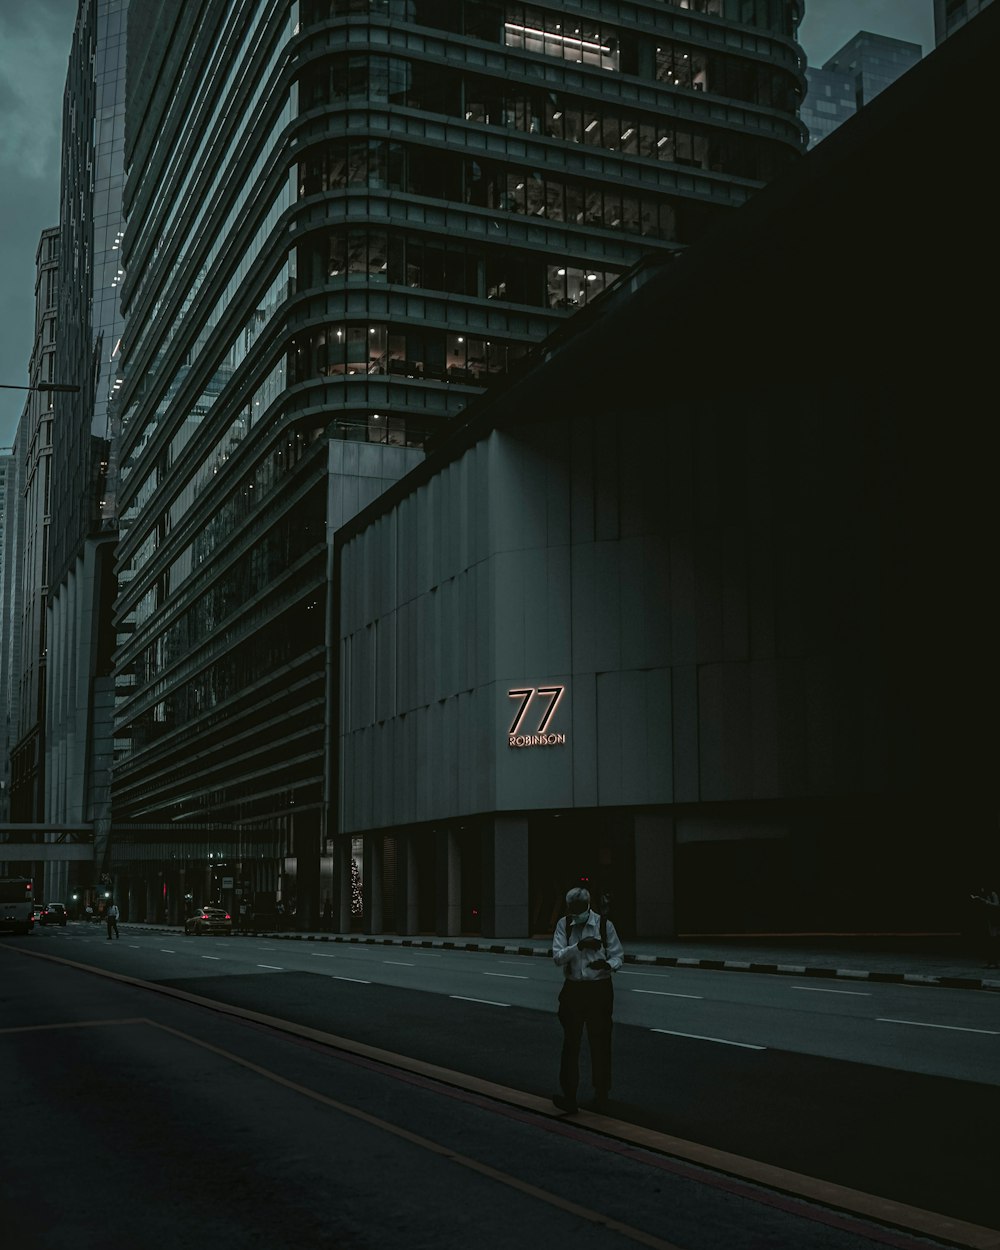 Ein Mann steht am Straßenrand neben einem hohen Gebäude